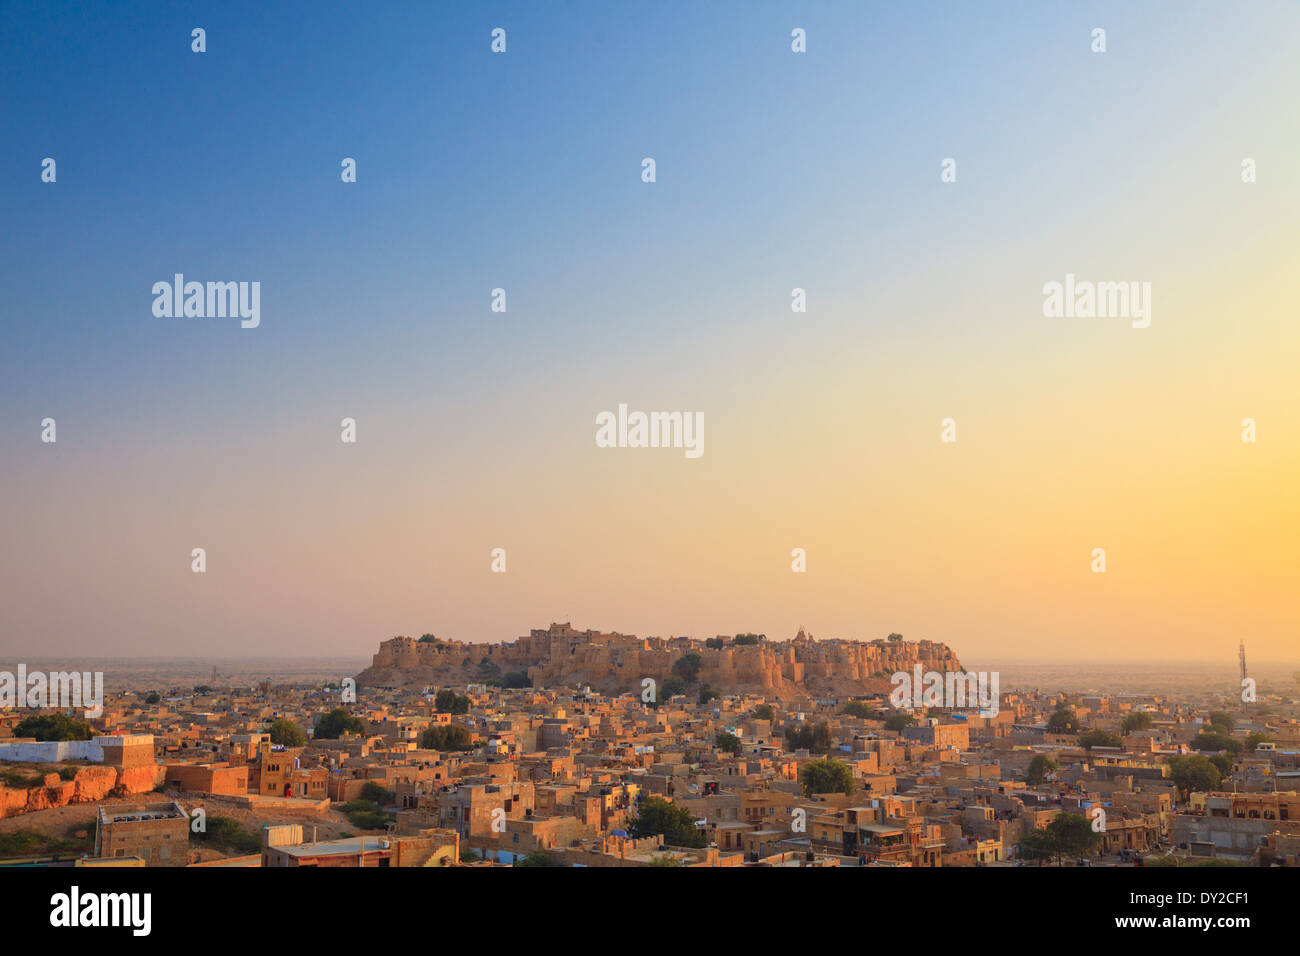 La India, Rajastán, Jaisalmer, Jaisalmer Fort Foto de stock